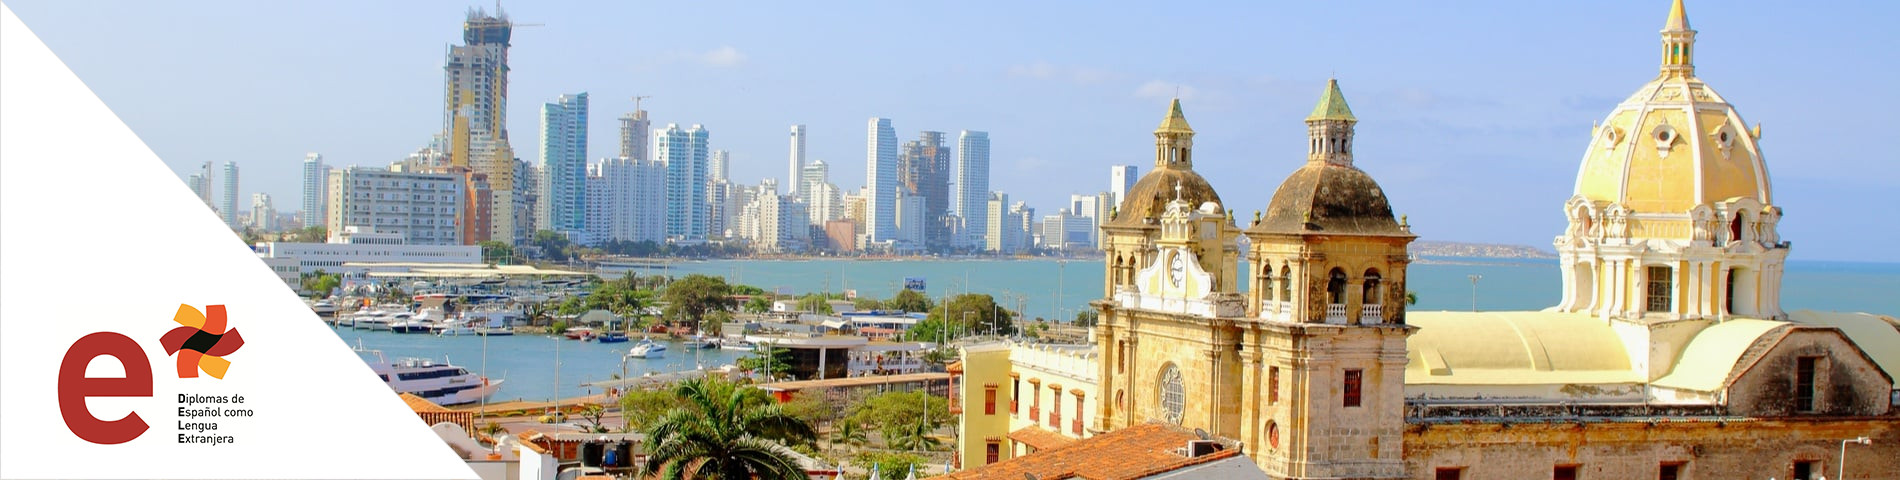 Cartagena - DELE